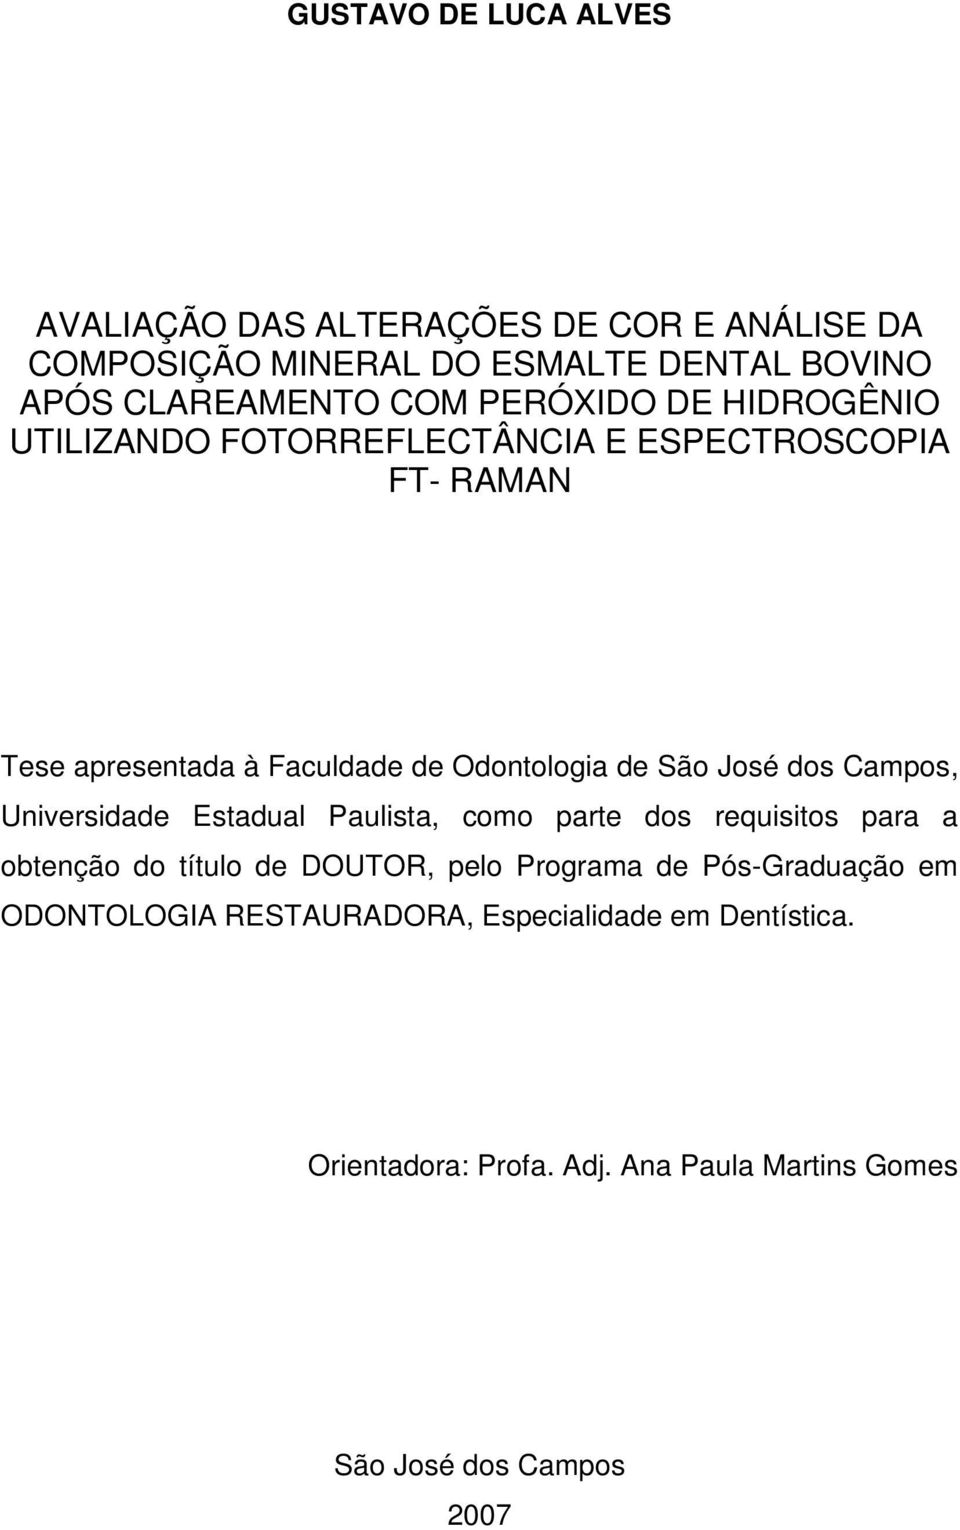 José dos Campos, Universidade Estadual Paulista, como parte dos requisitos para a obtenção do título de DOUTOR, pelo Programa de